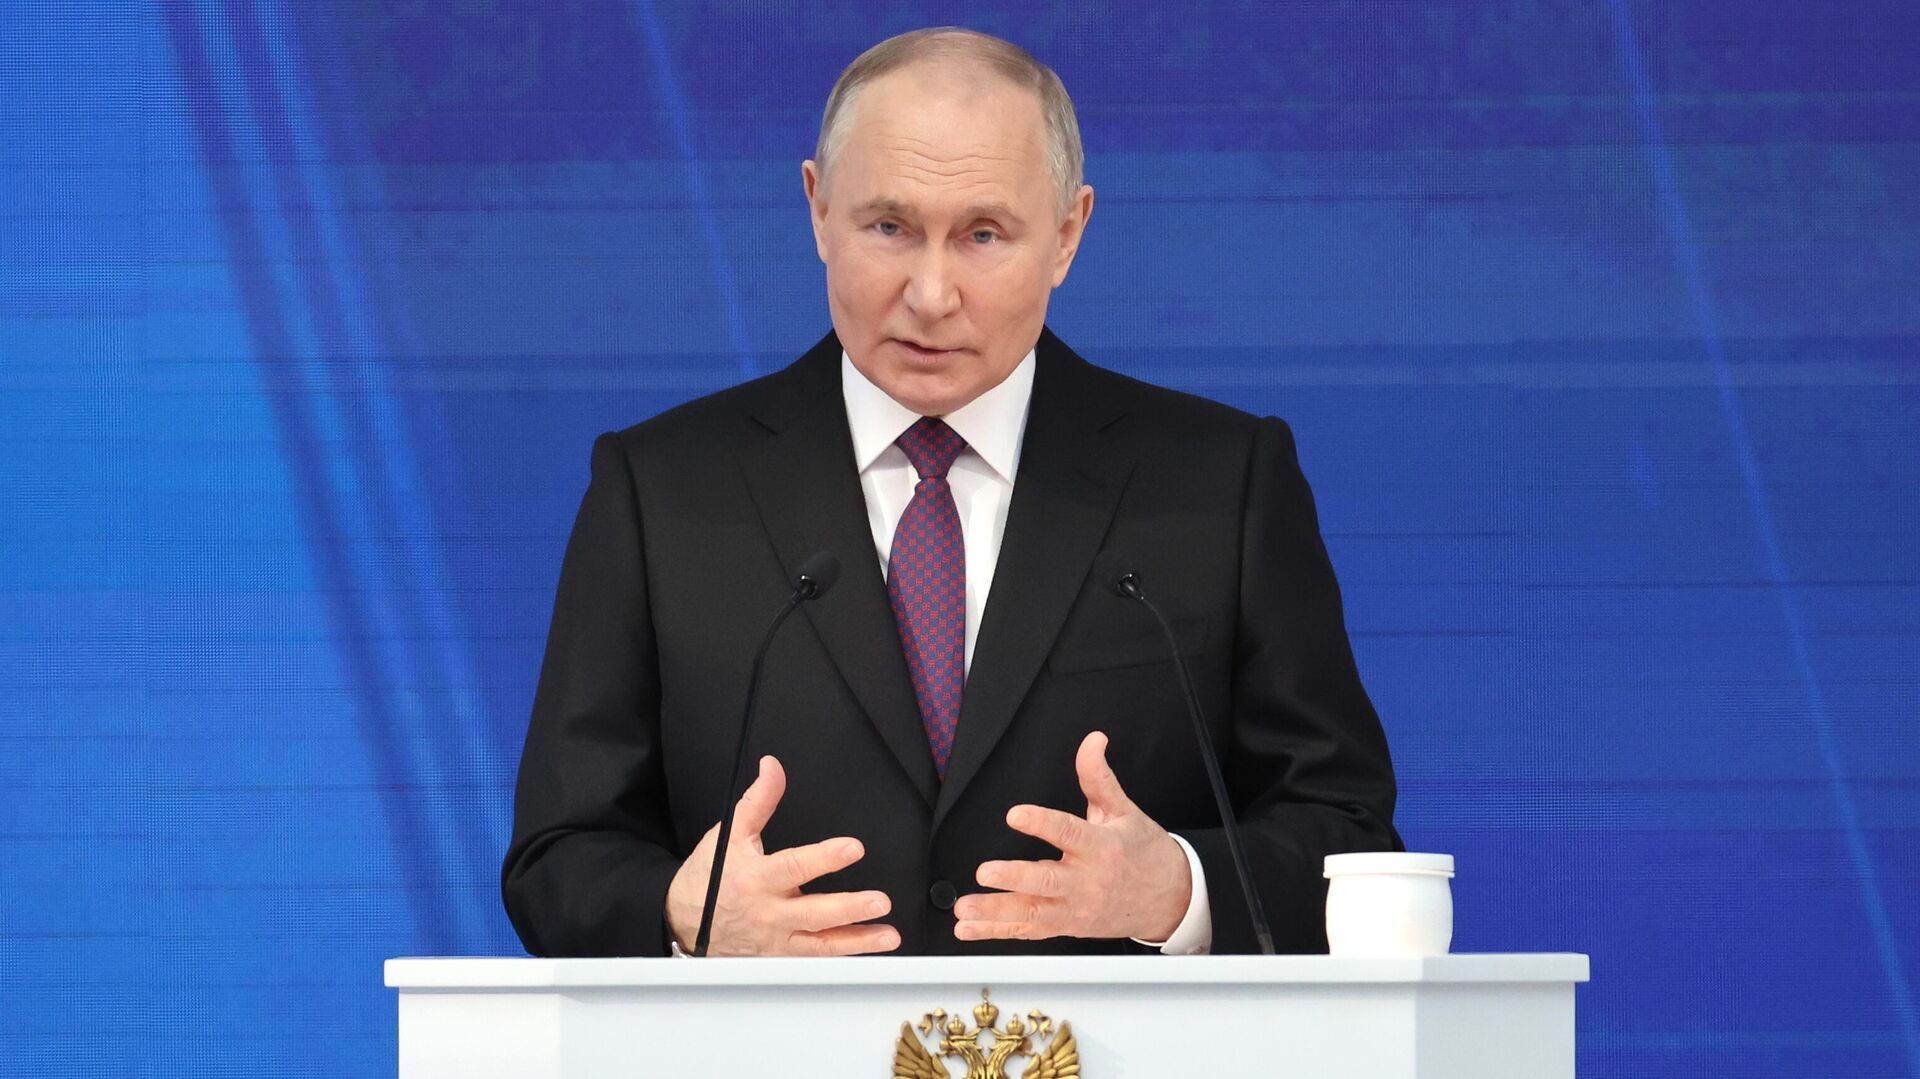 Победа Путина - сдерживающий фактор для НАТО, считает экс-сенатор из США